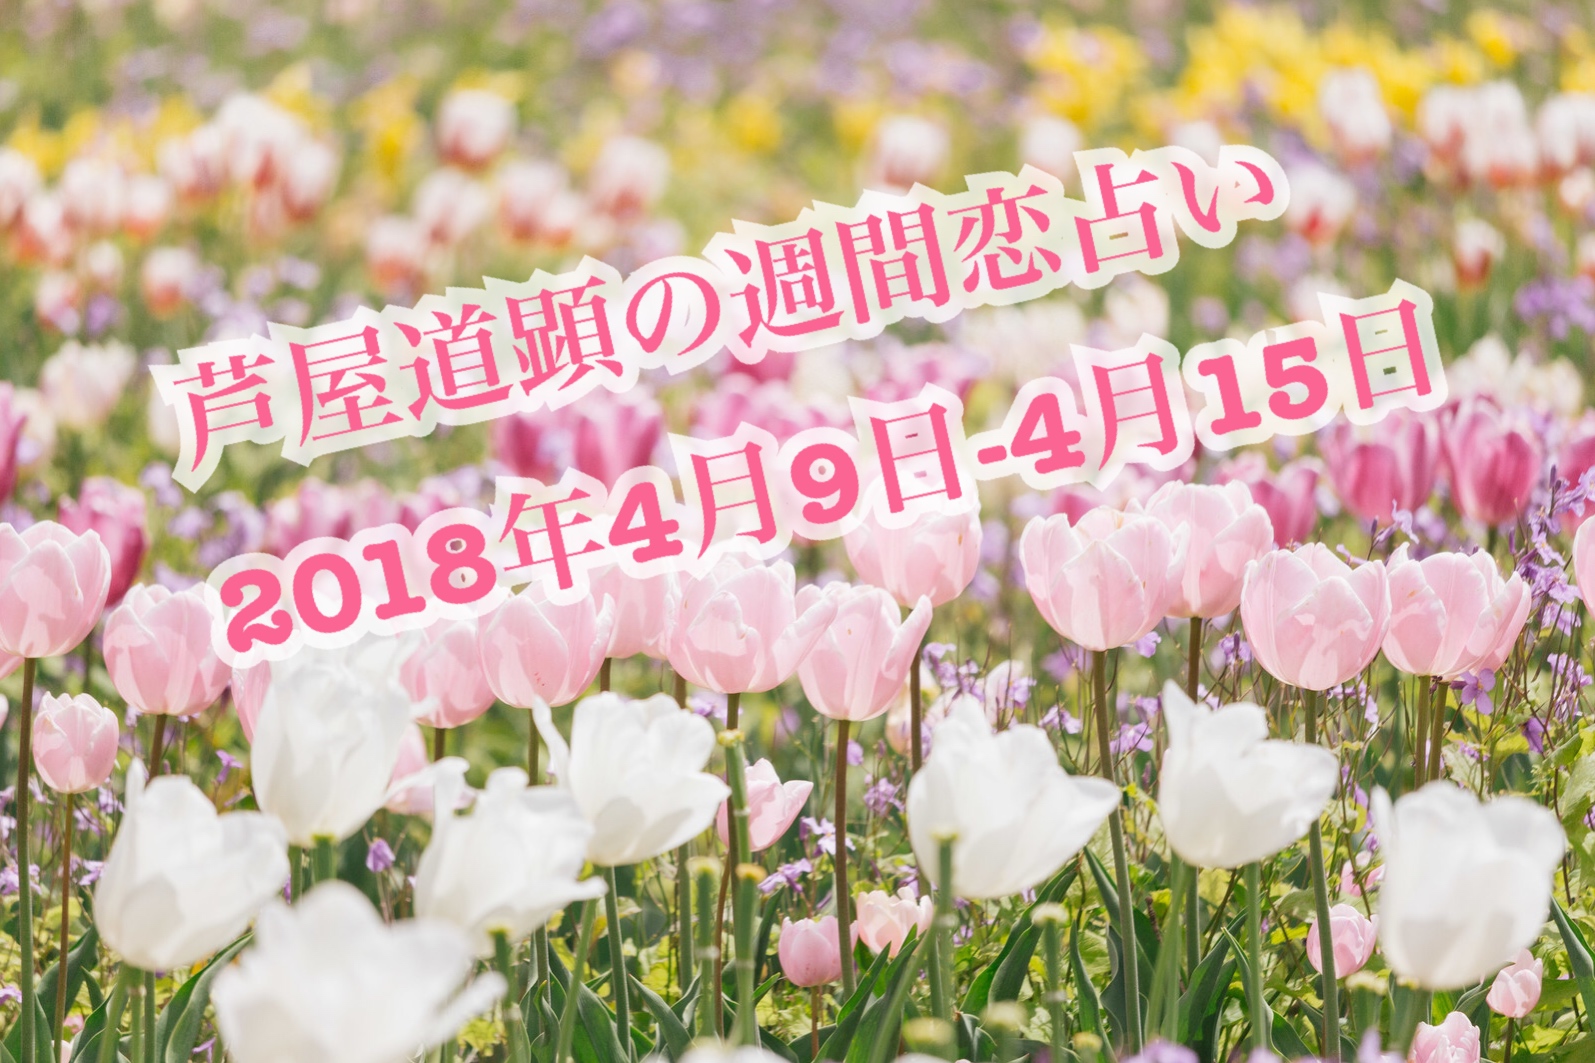 2018年4月9日-4月15日の恋愛運【芦屋道顕の音魂占い】